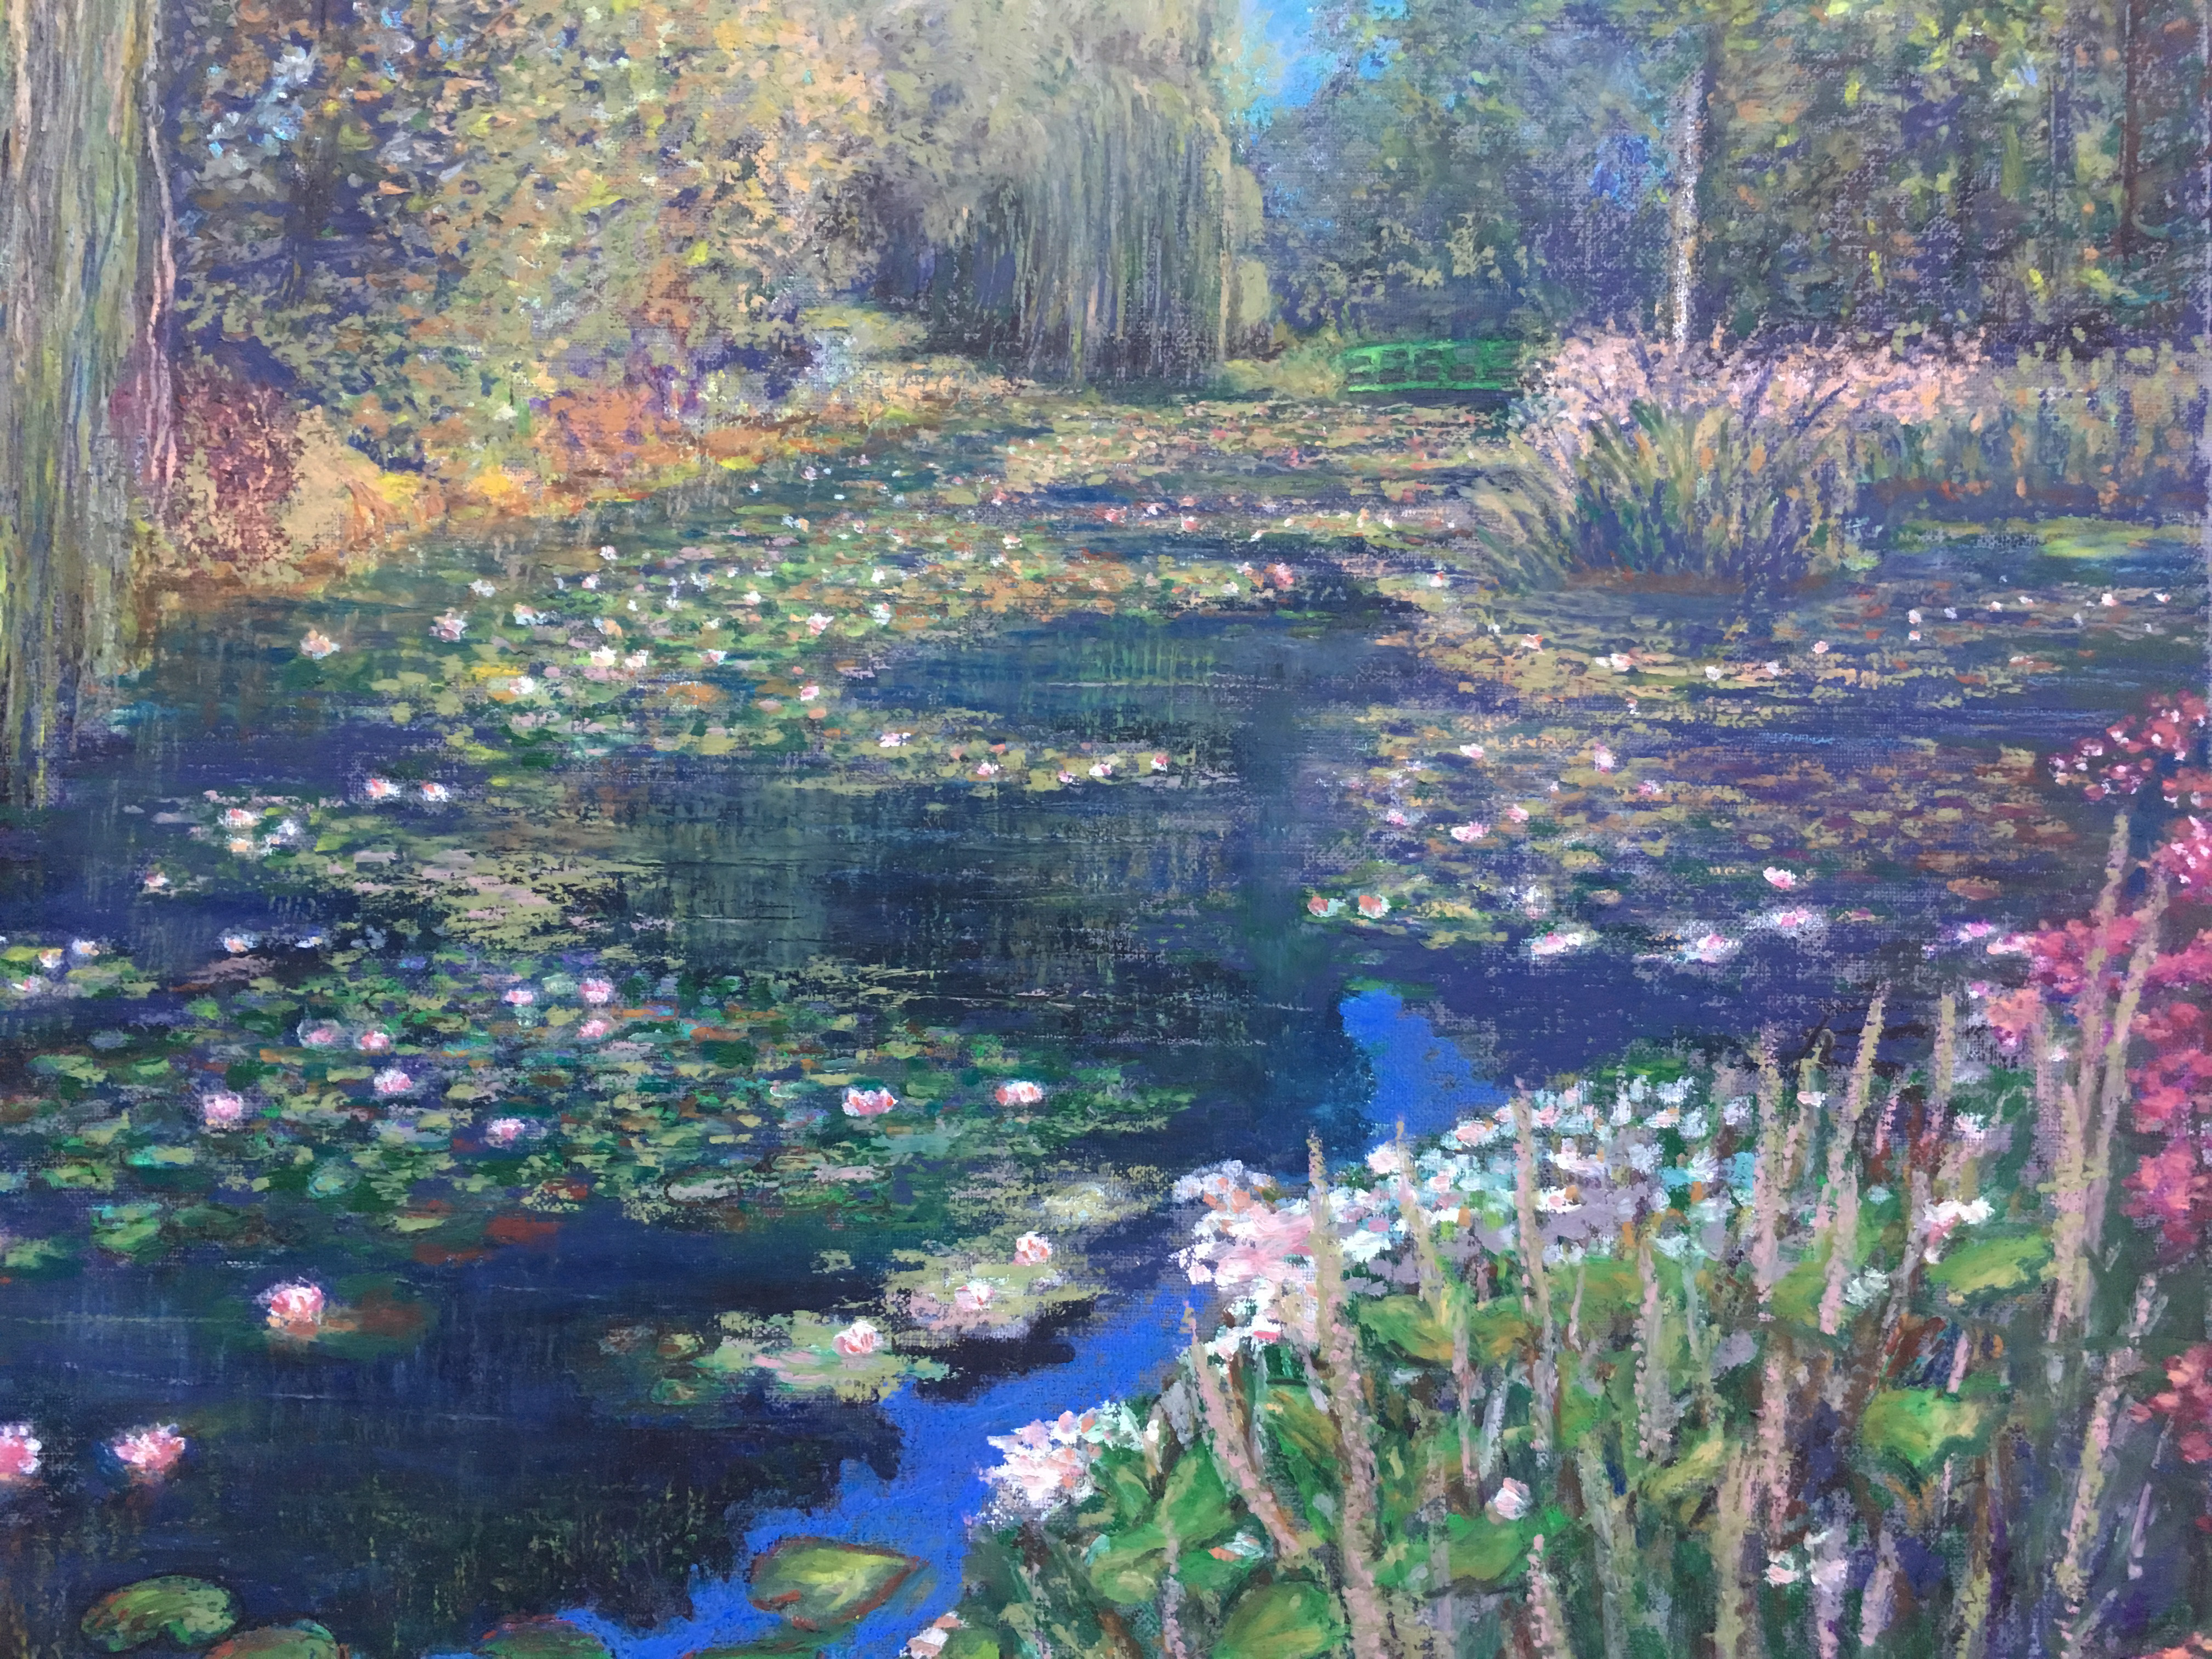 Пейзаж пруд Живерни кувшинки картина масляная пастель импрессионизм художник Альберт Сафиуллин